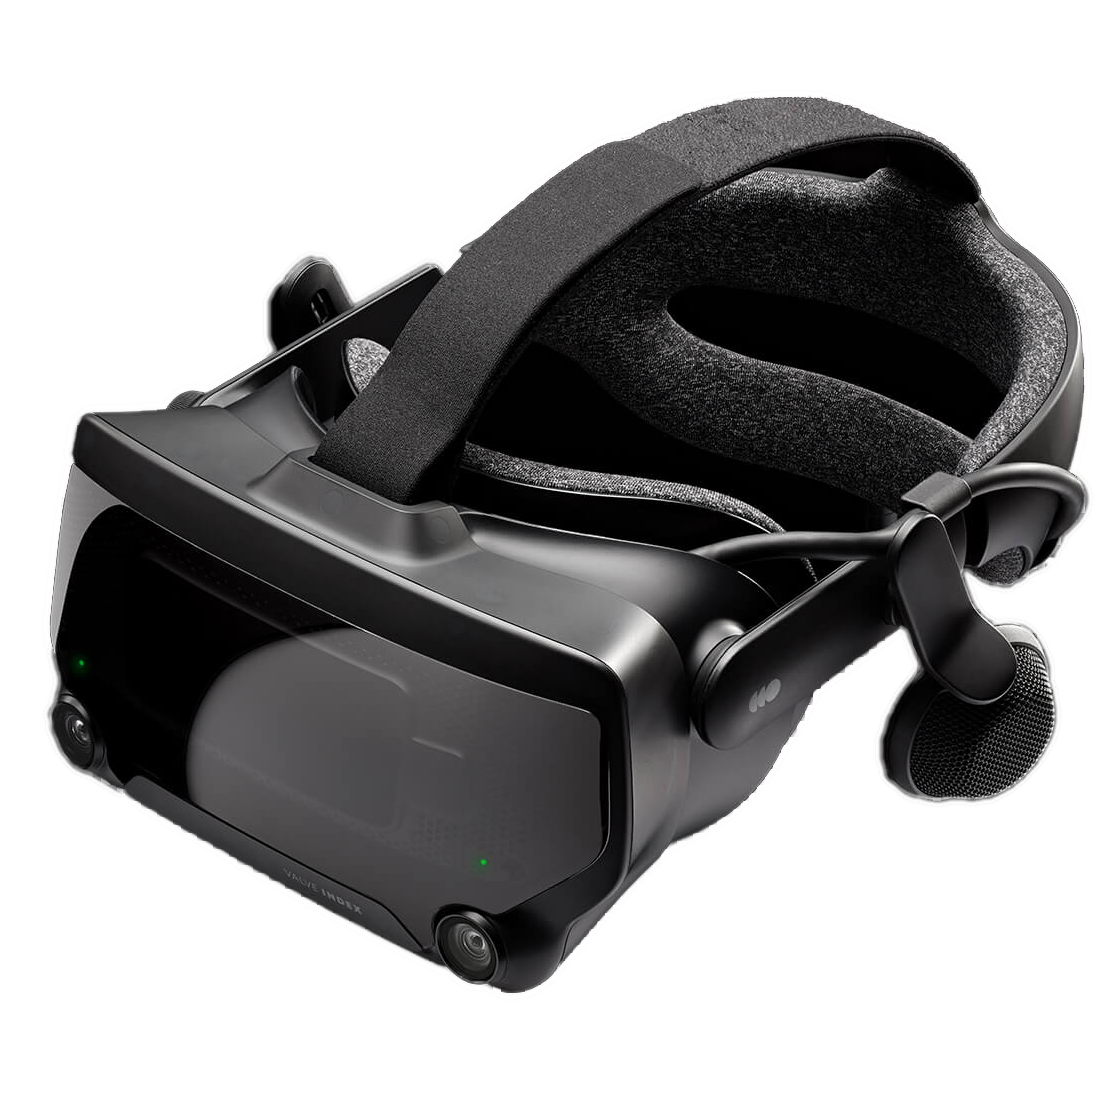 Steam vr 301. VR шлем Valve. Valve Index VR Kit. Шлем VR Valve Index VR Kit. Valve Index HMD.